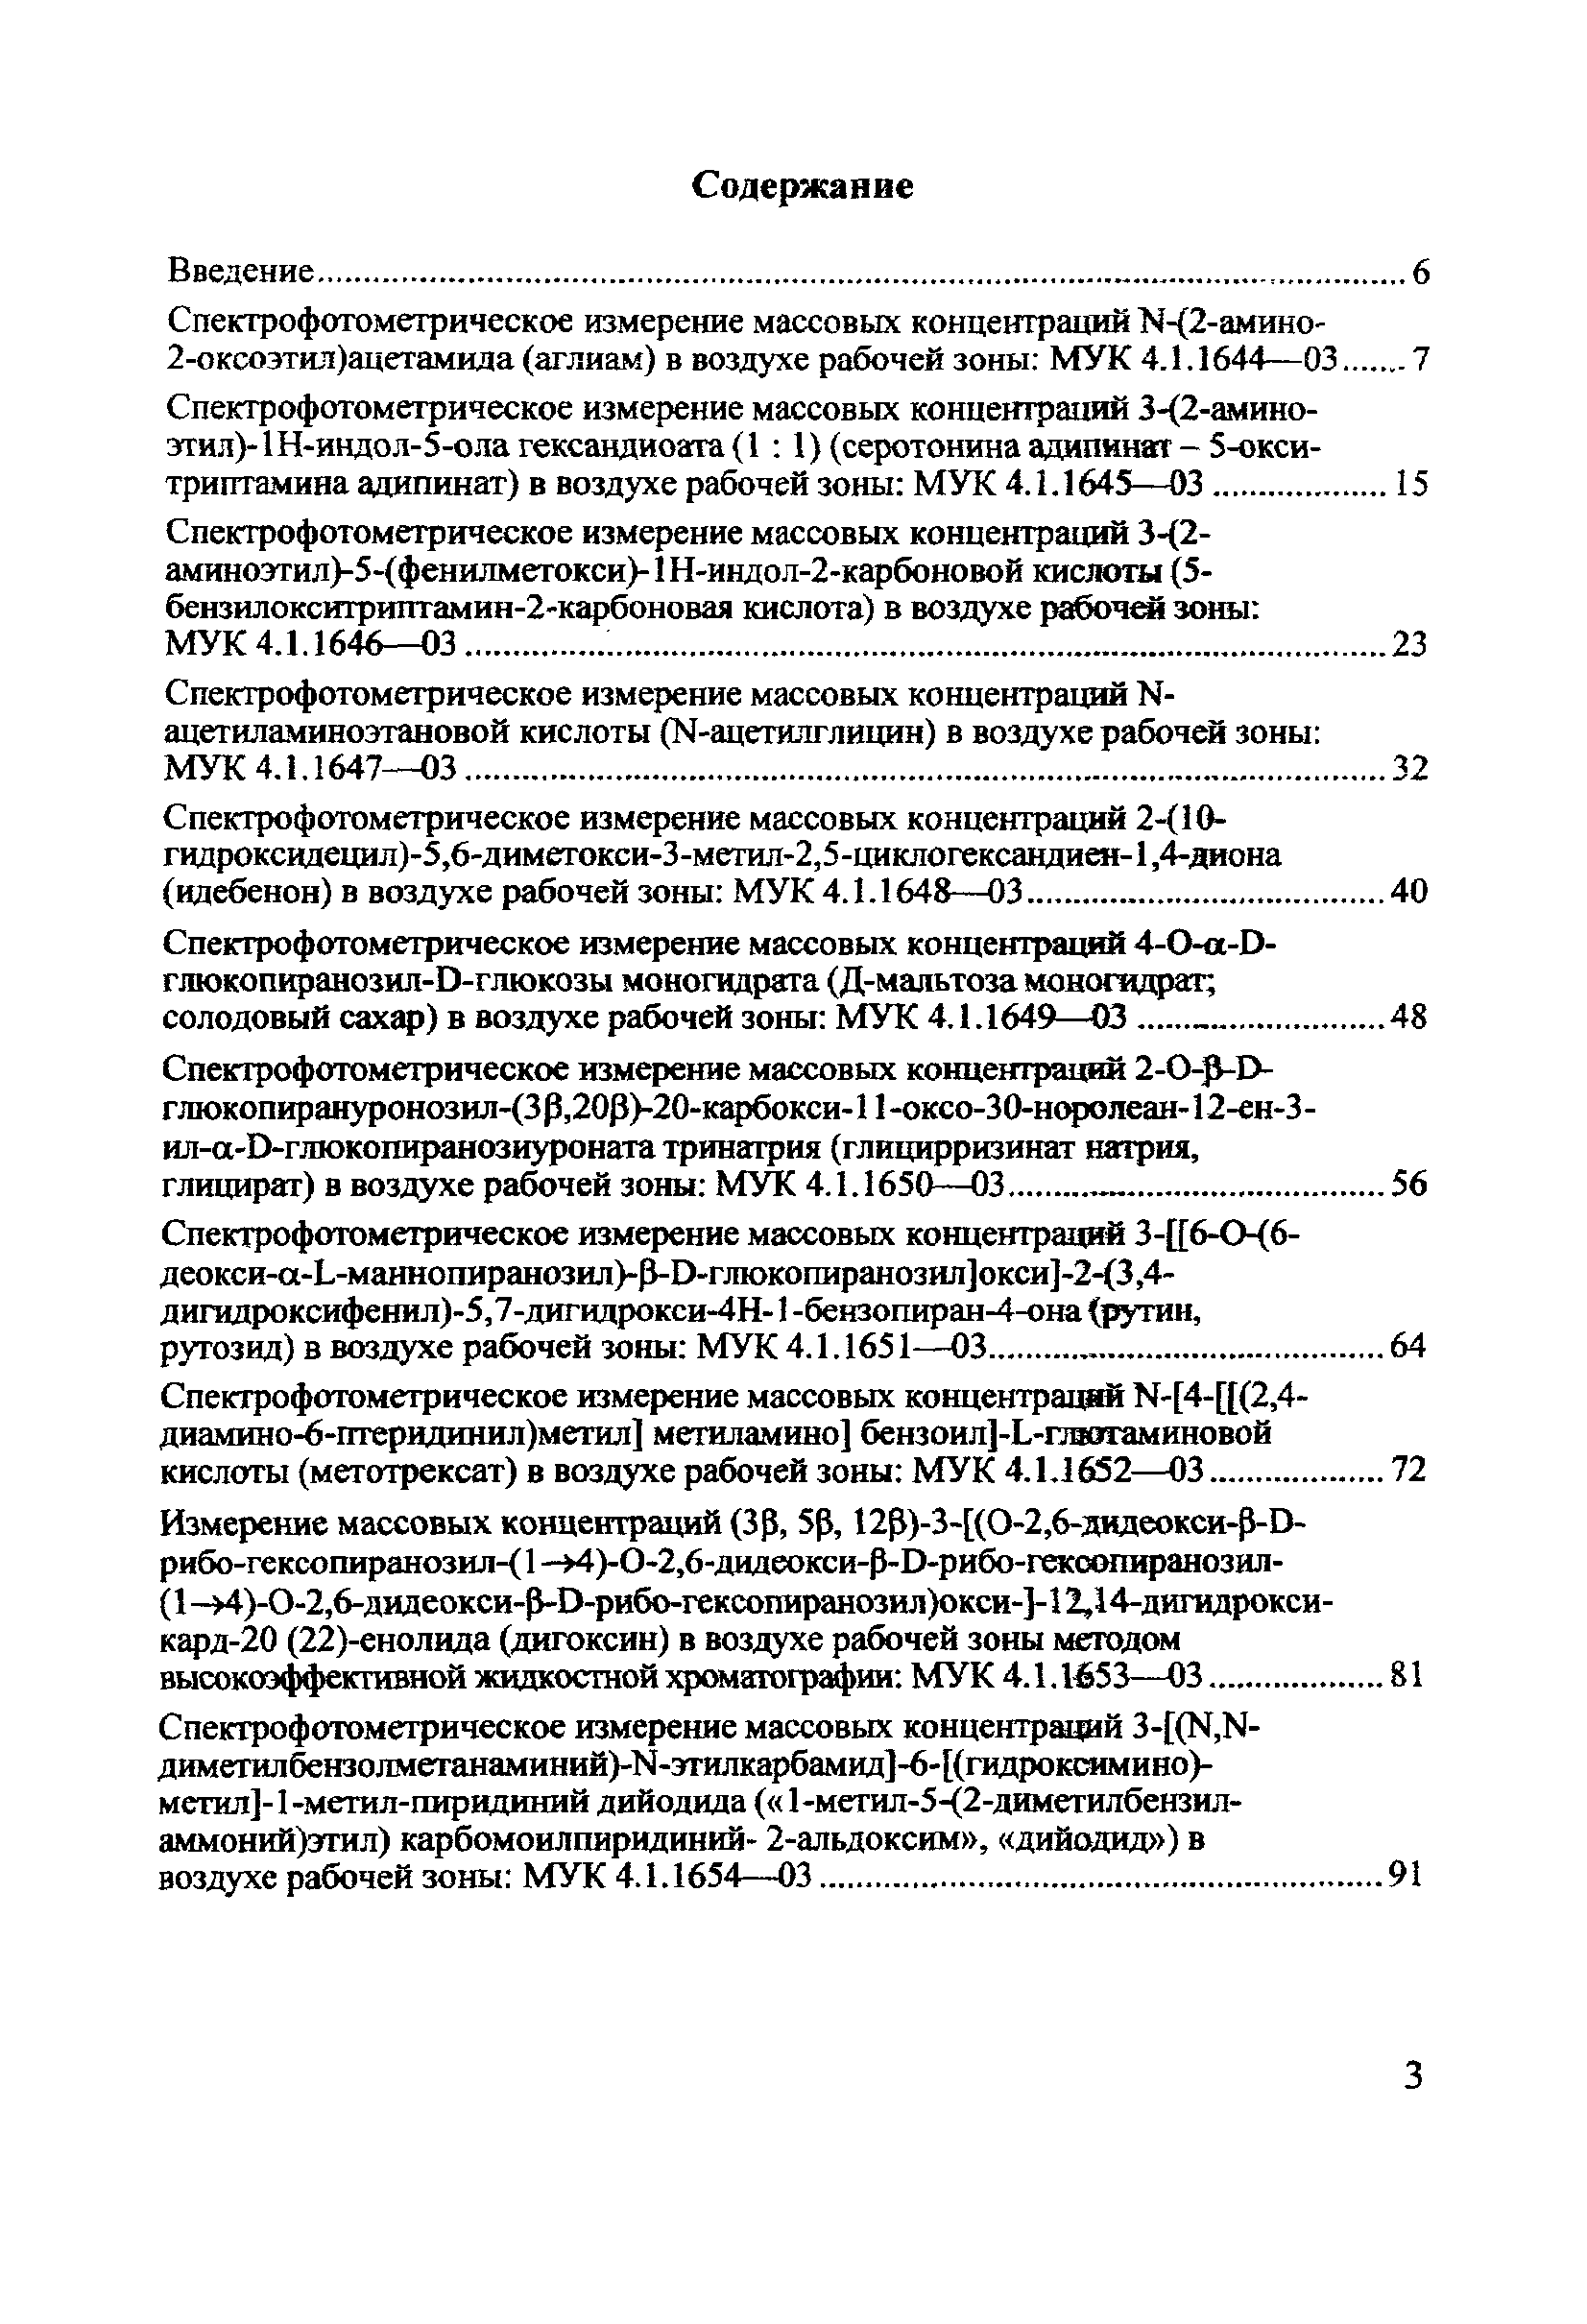 МУК 4.1.1653-03